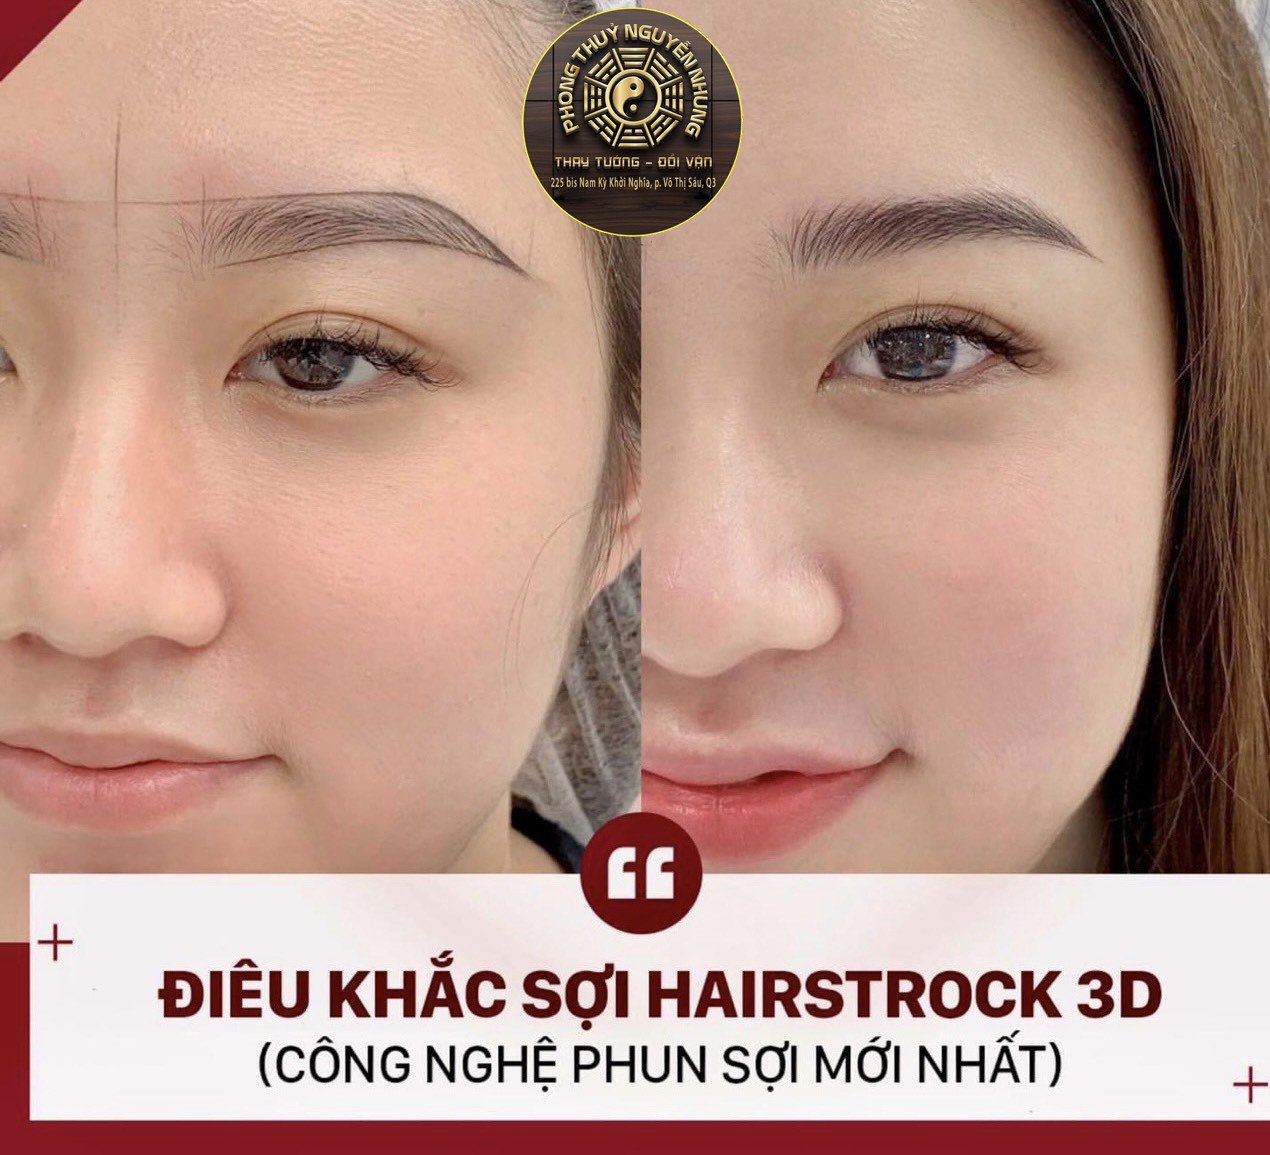 Điêu Khắc Sợi Hairstrock 3D - Công Nghệ Phun Sợi Mới Nhất - Chân Mày Phong Thủy Nguyễn Nhung